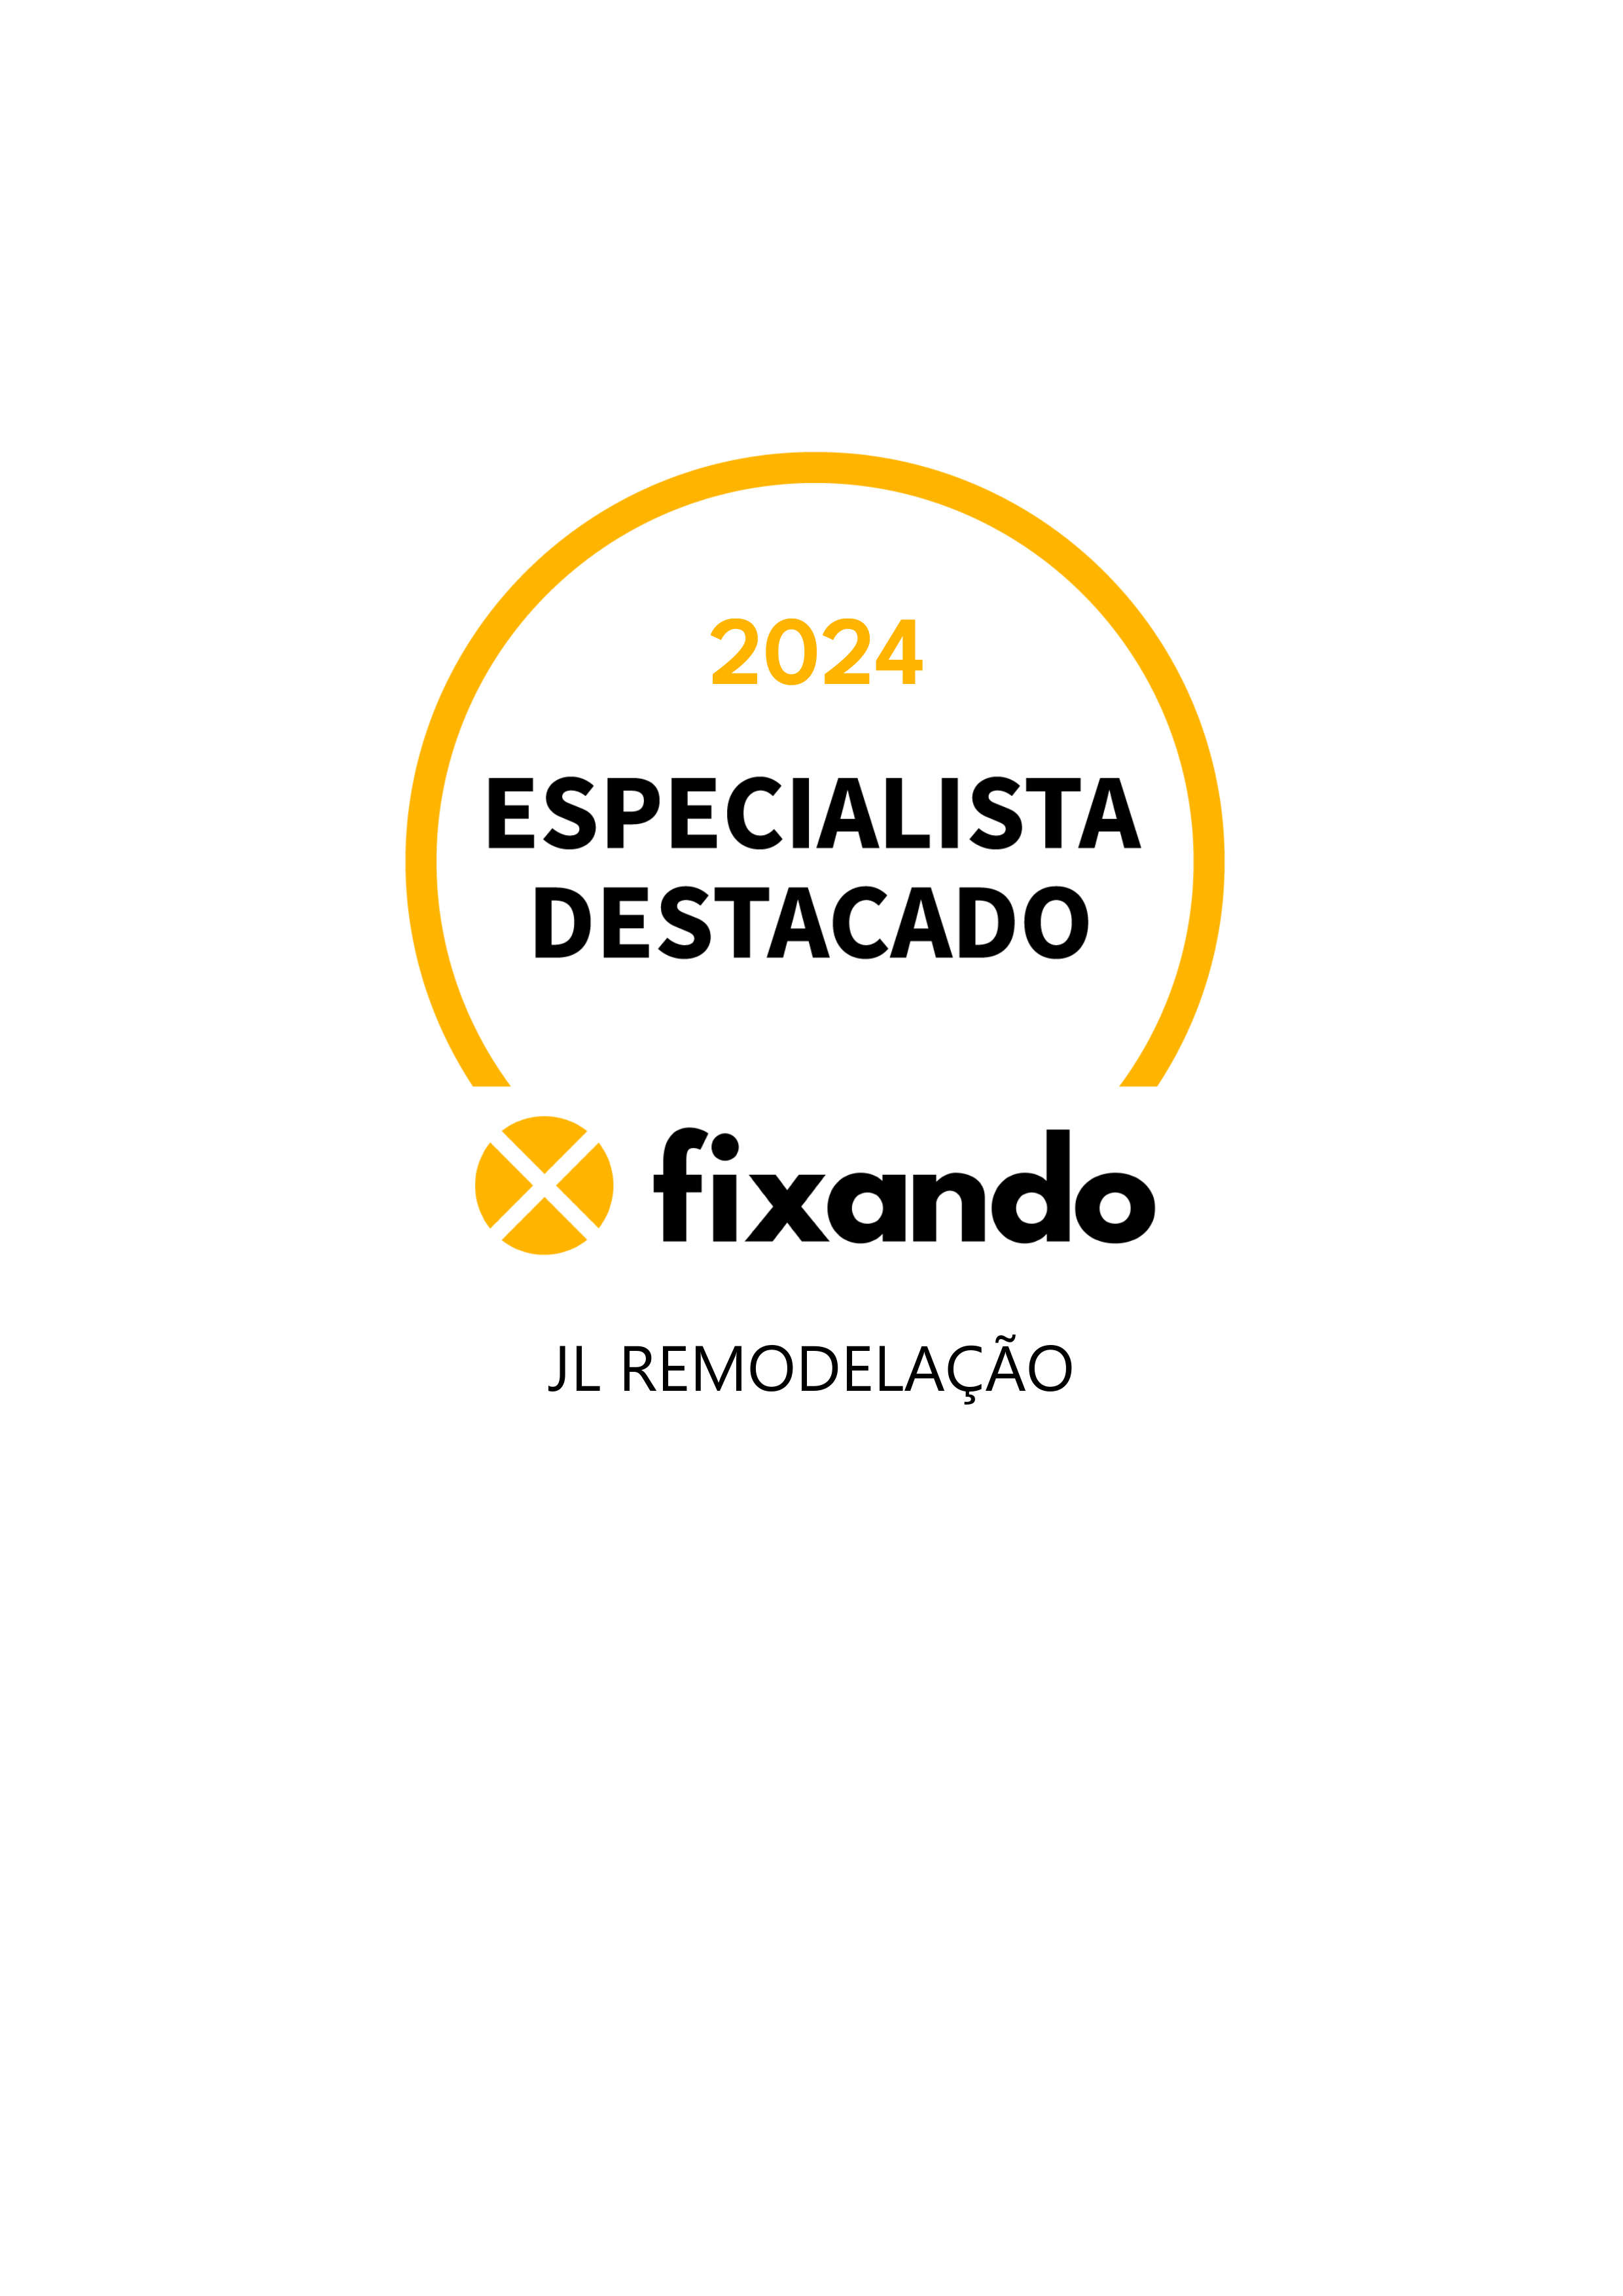 Jl remodelação - Setúbal - Calafetagem